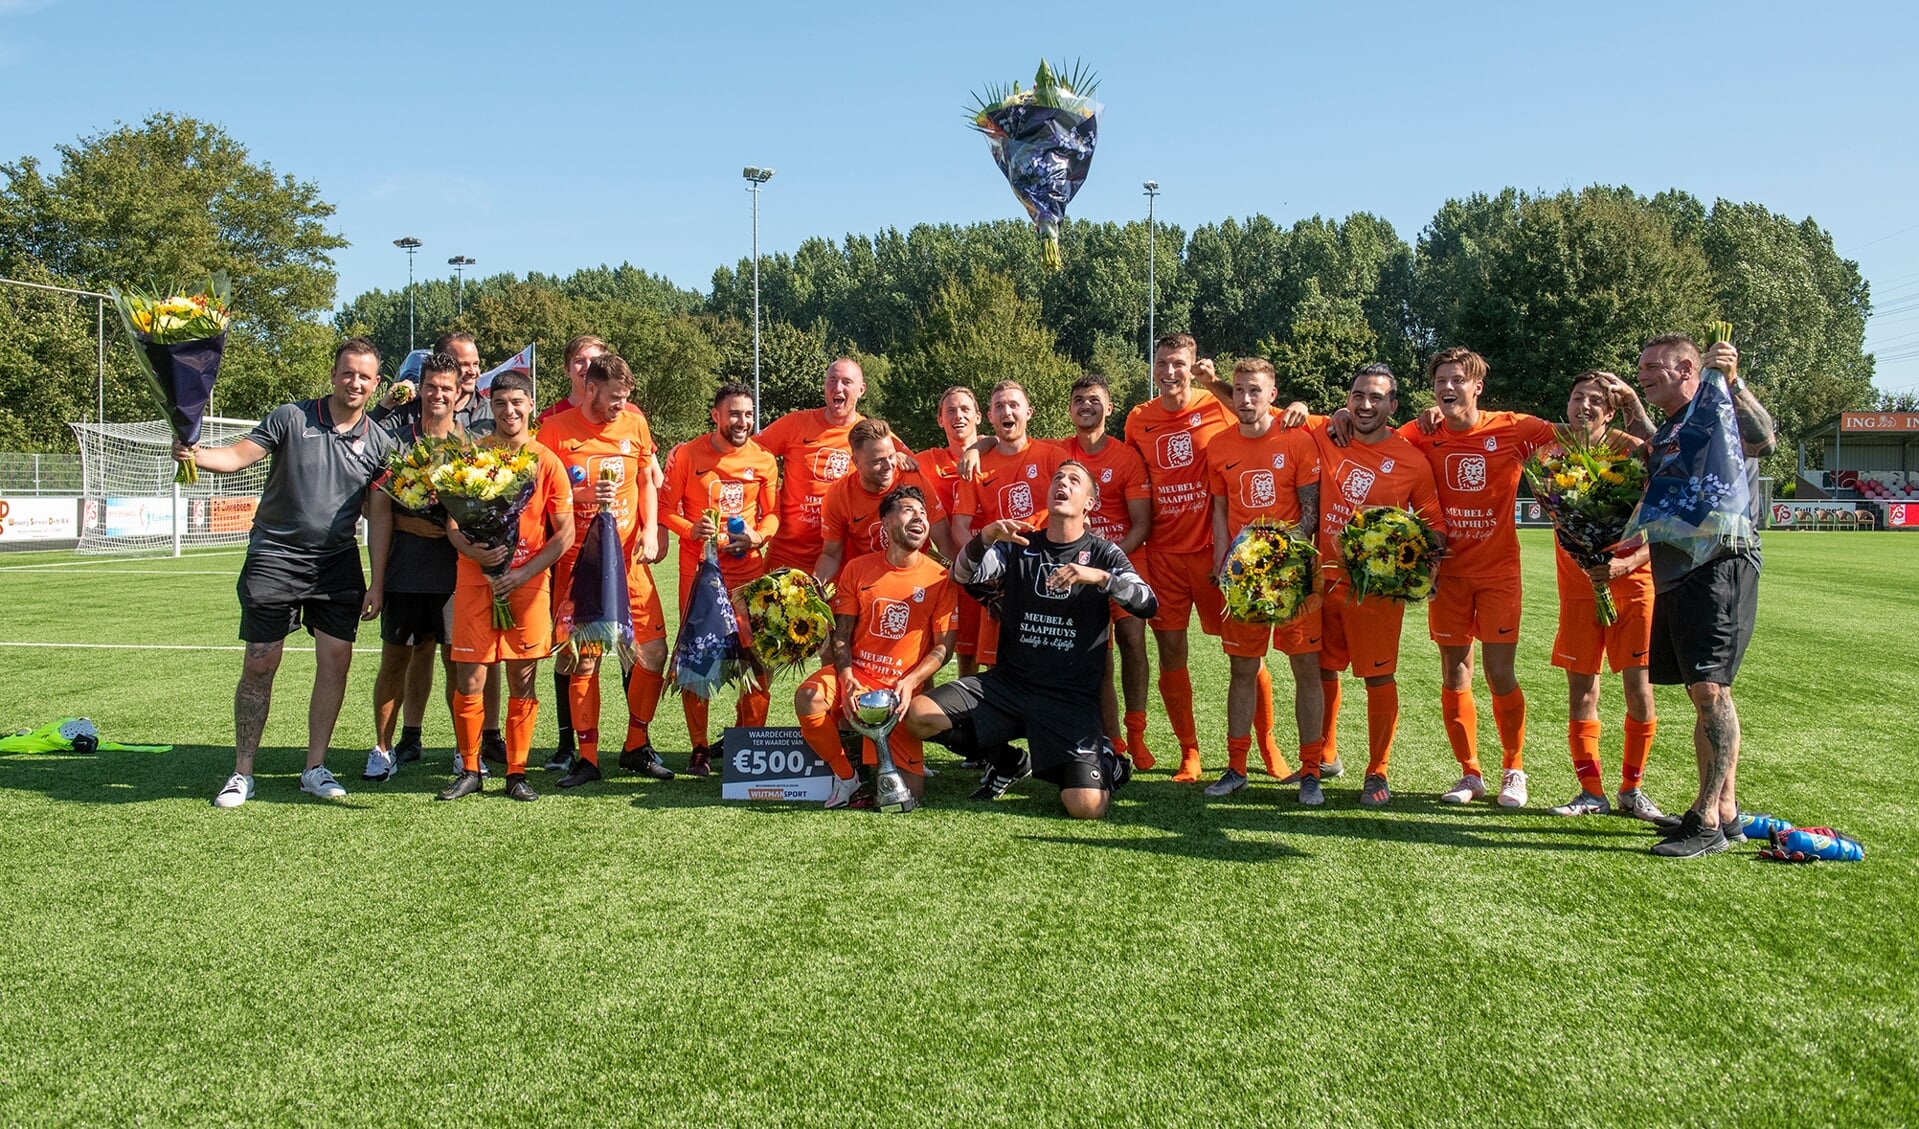 Grote vreugde bij de spelers van Full Speed na de winst in de Stad Delft Bokaal. Keeper Reinder Pul wist na het stoppen van een penalty ook de bos bloemen veilig thuis te brengen. (foto: Roel van Dorsten) 